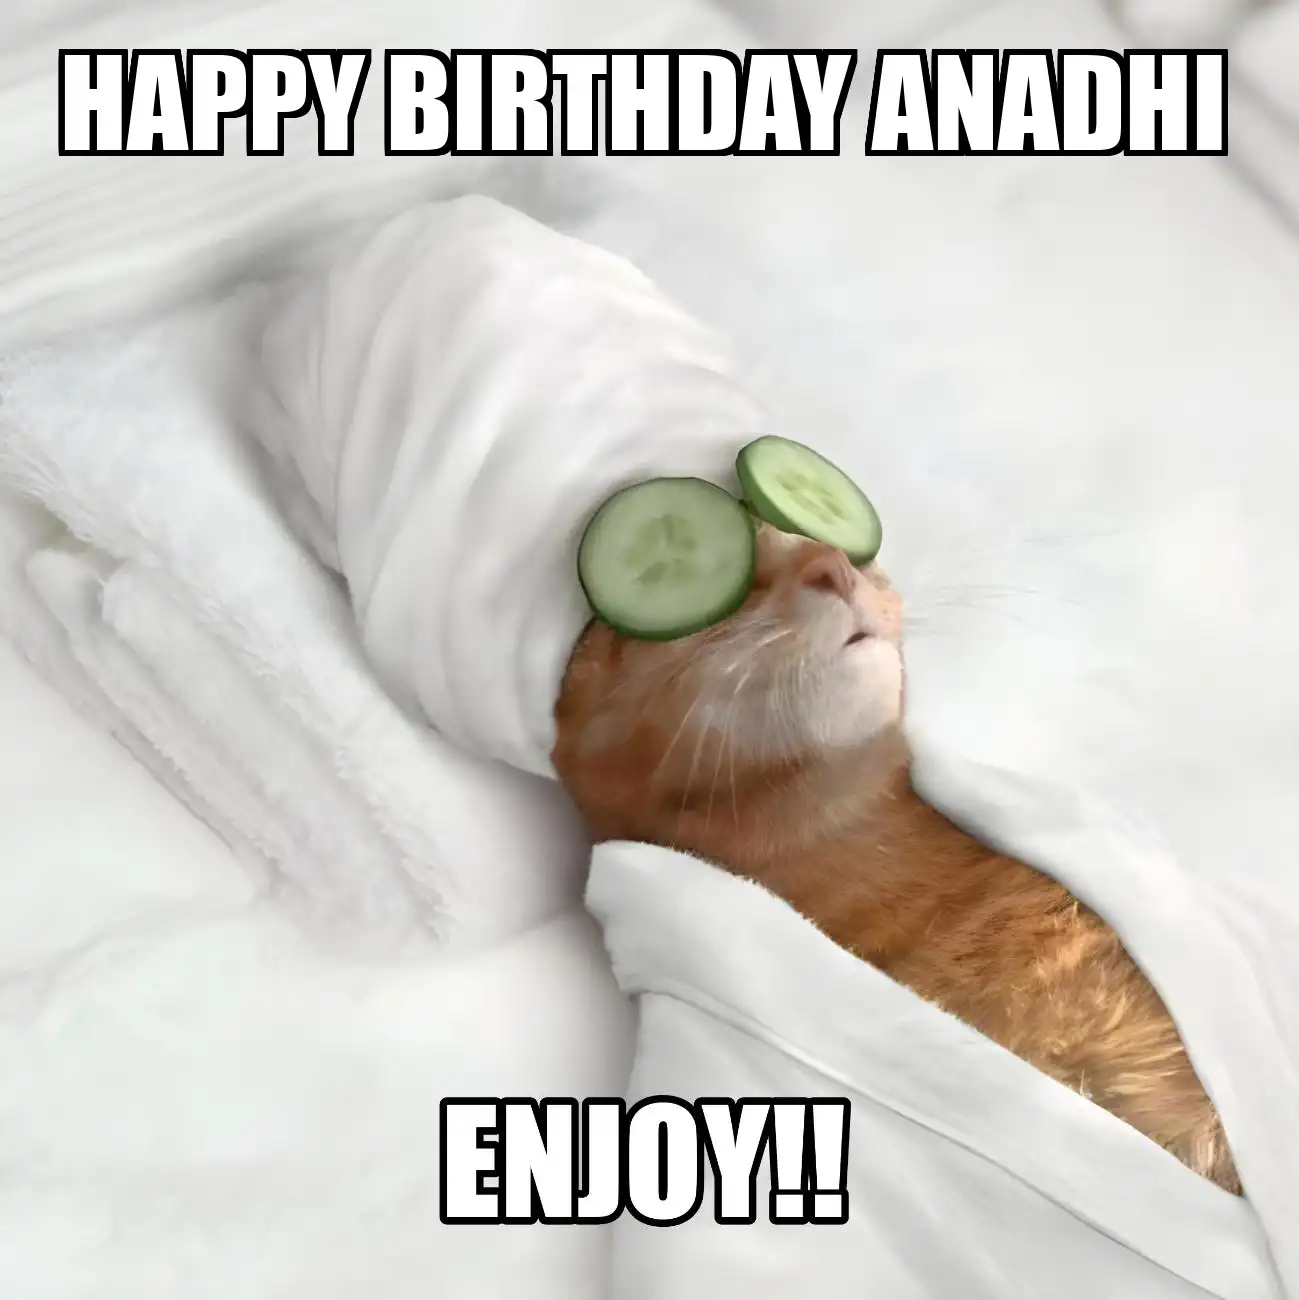 Happy Birthday Anadhi Enjoy Cat Meme